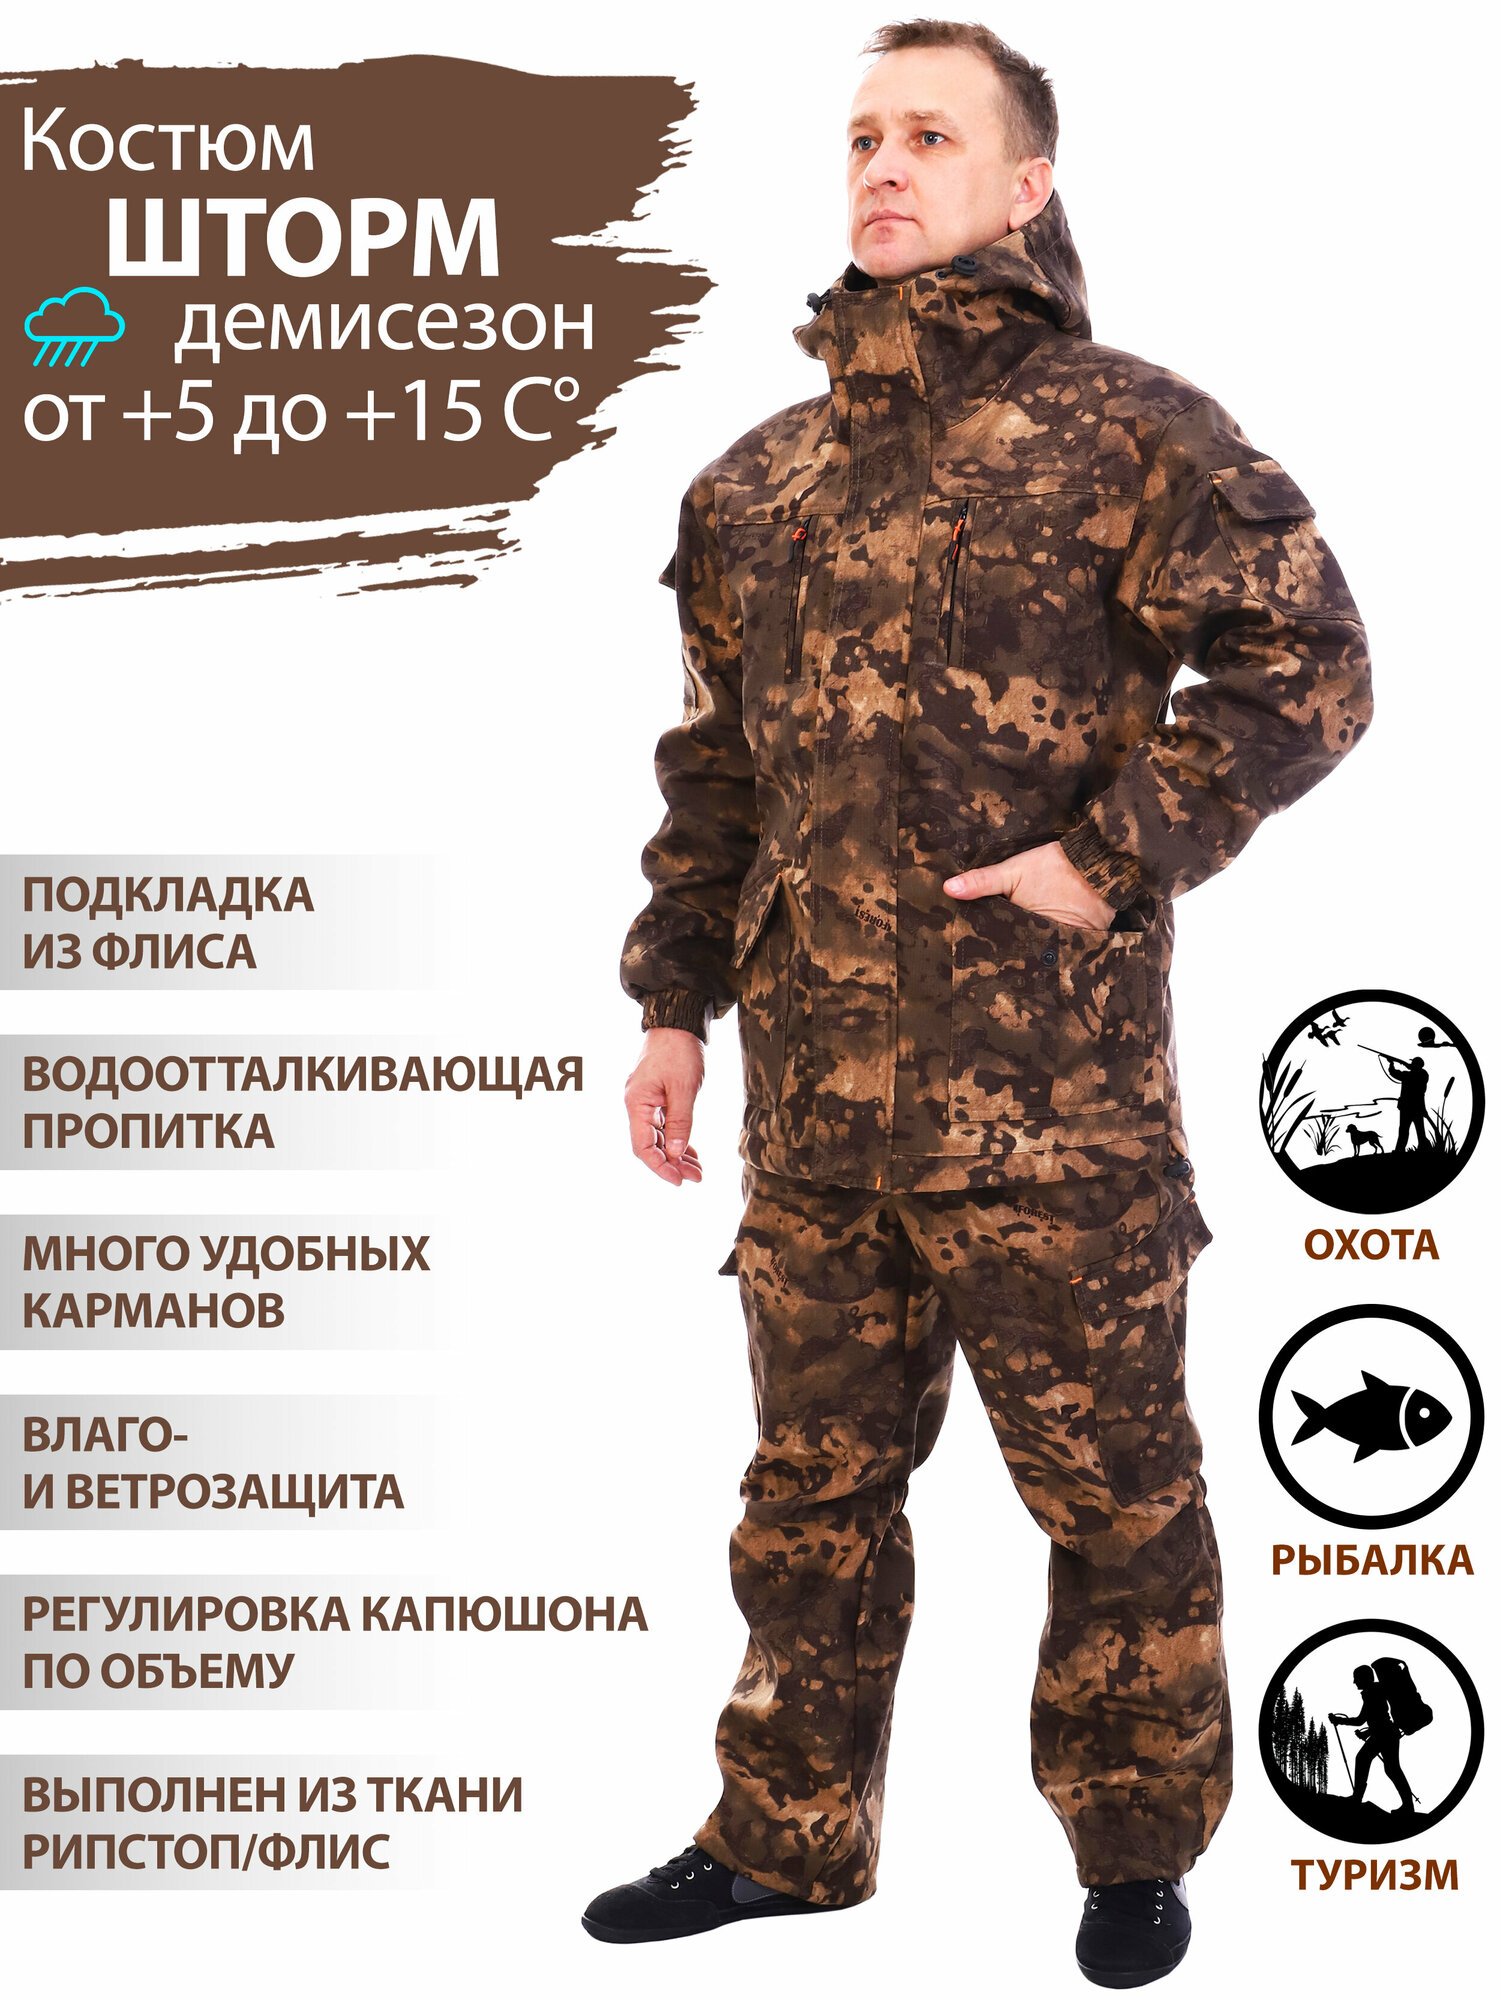 Восток-текс / костюм Горка рыболовный демисезон для активного отдыха, охота, рыбалка, туризм